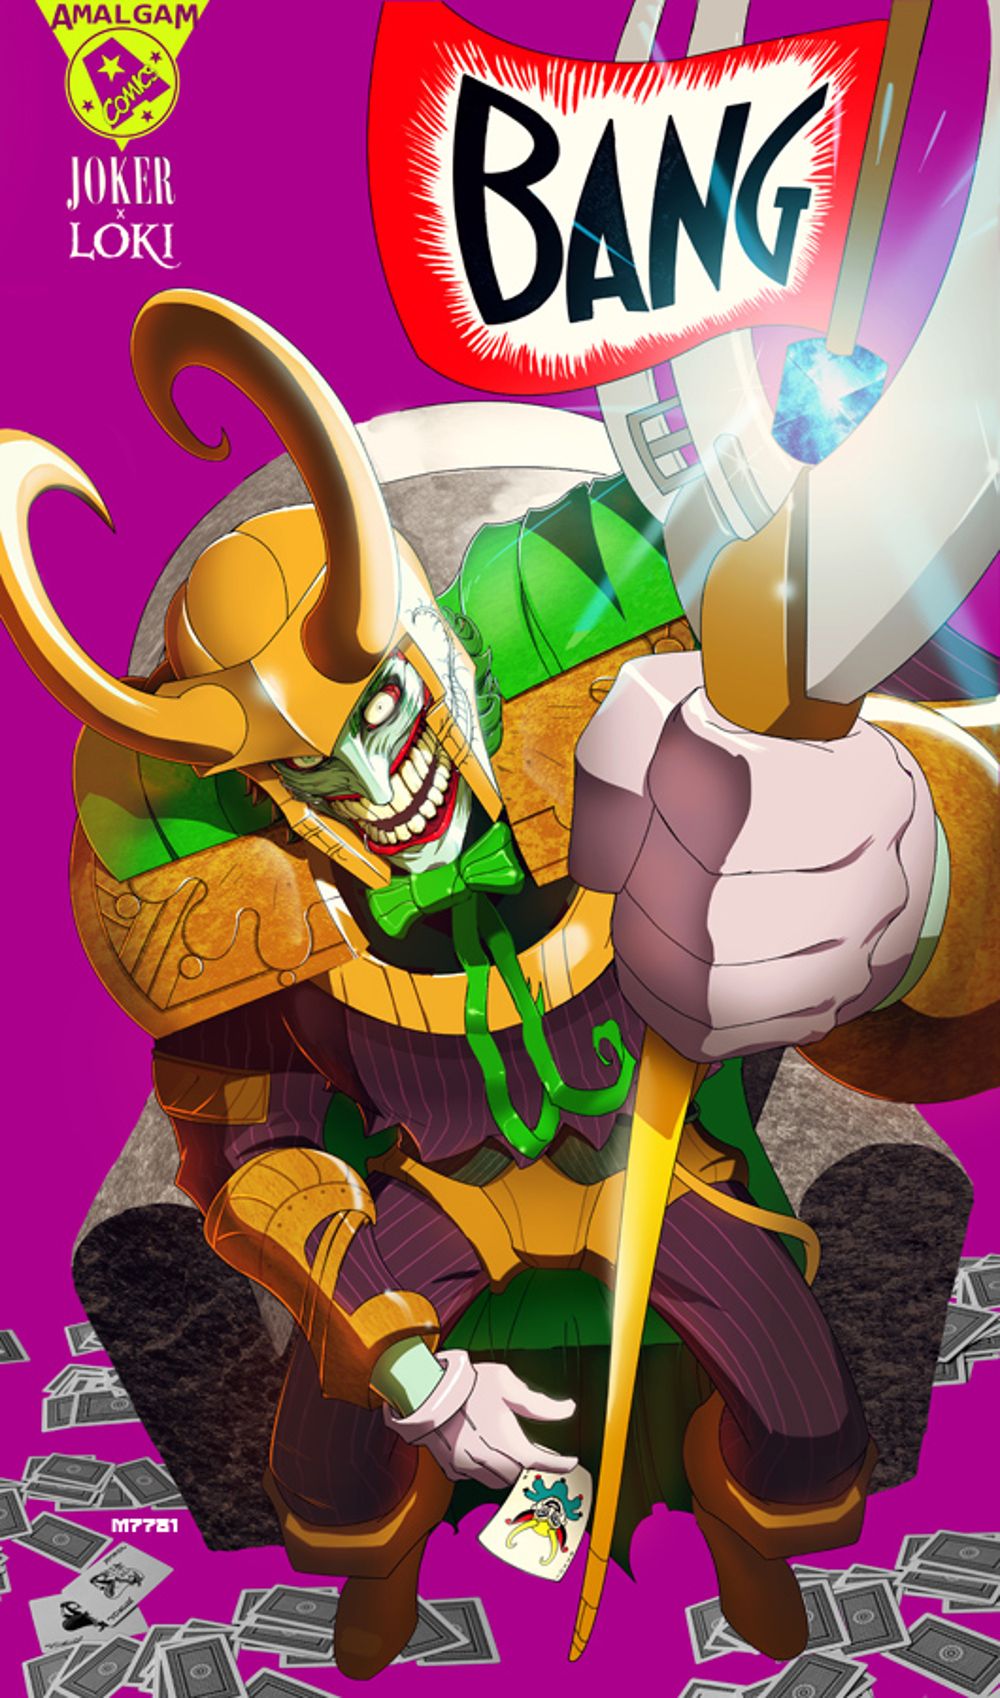 The Joker Loki